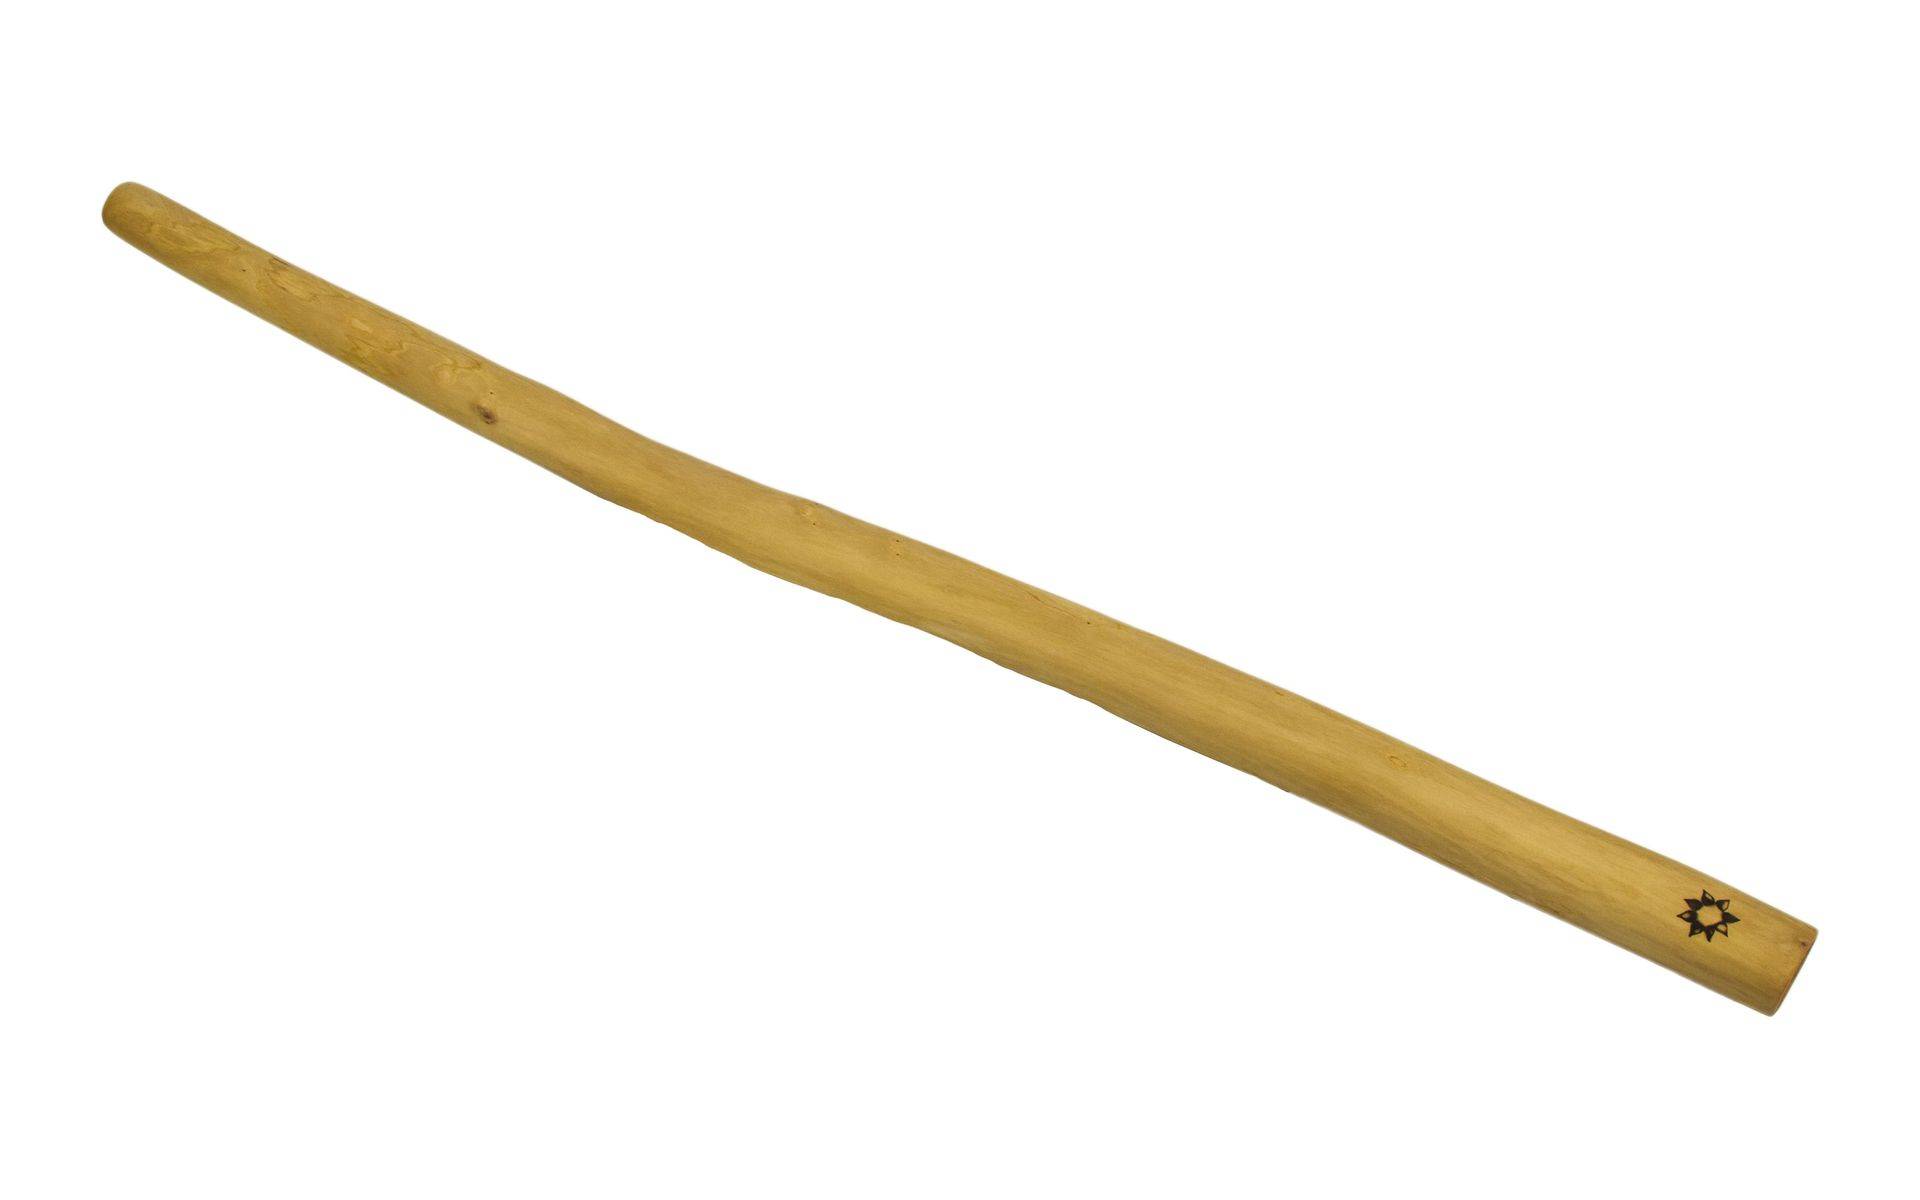 Didgeridoo pre začiatočníkov, brest, 139cm